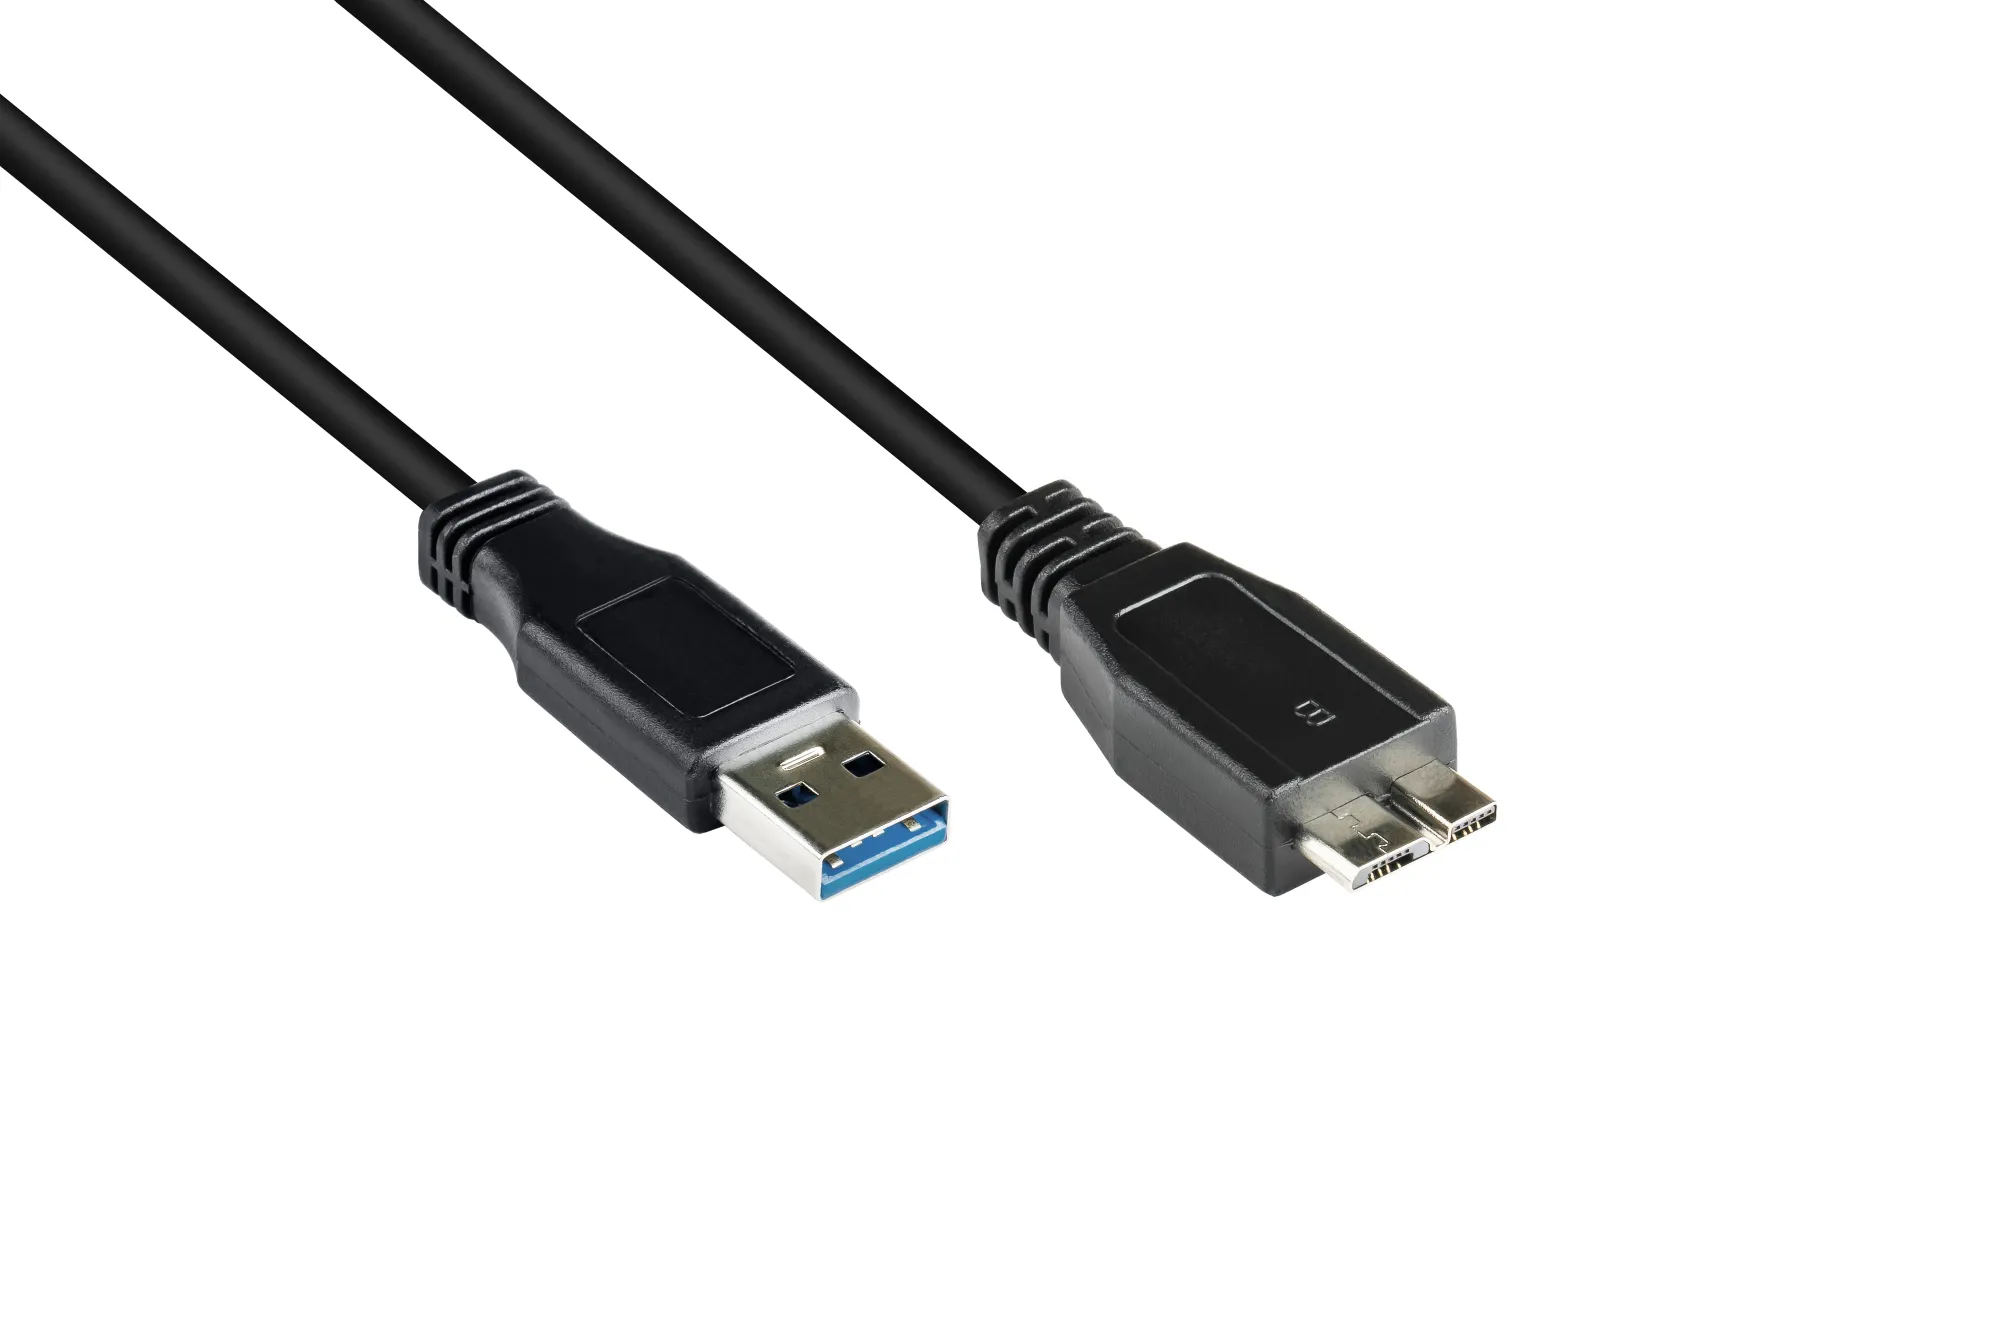 Anschlusskabel USB 3.0 Stecker A an Stecker Micro B, schwarz, 1m, Good Connections®